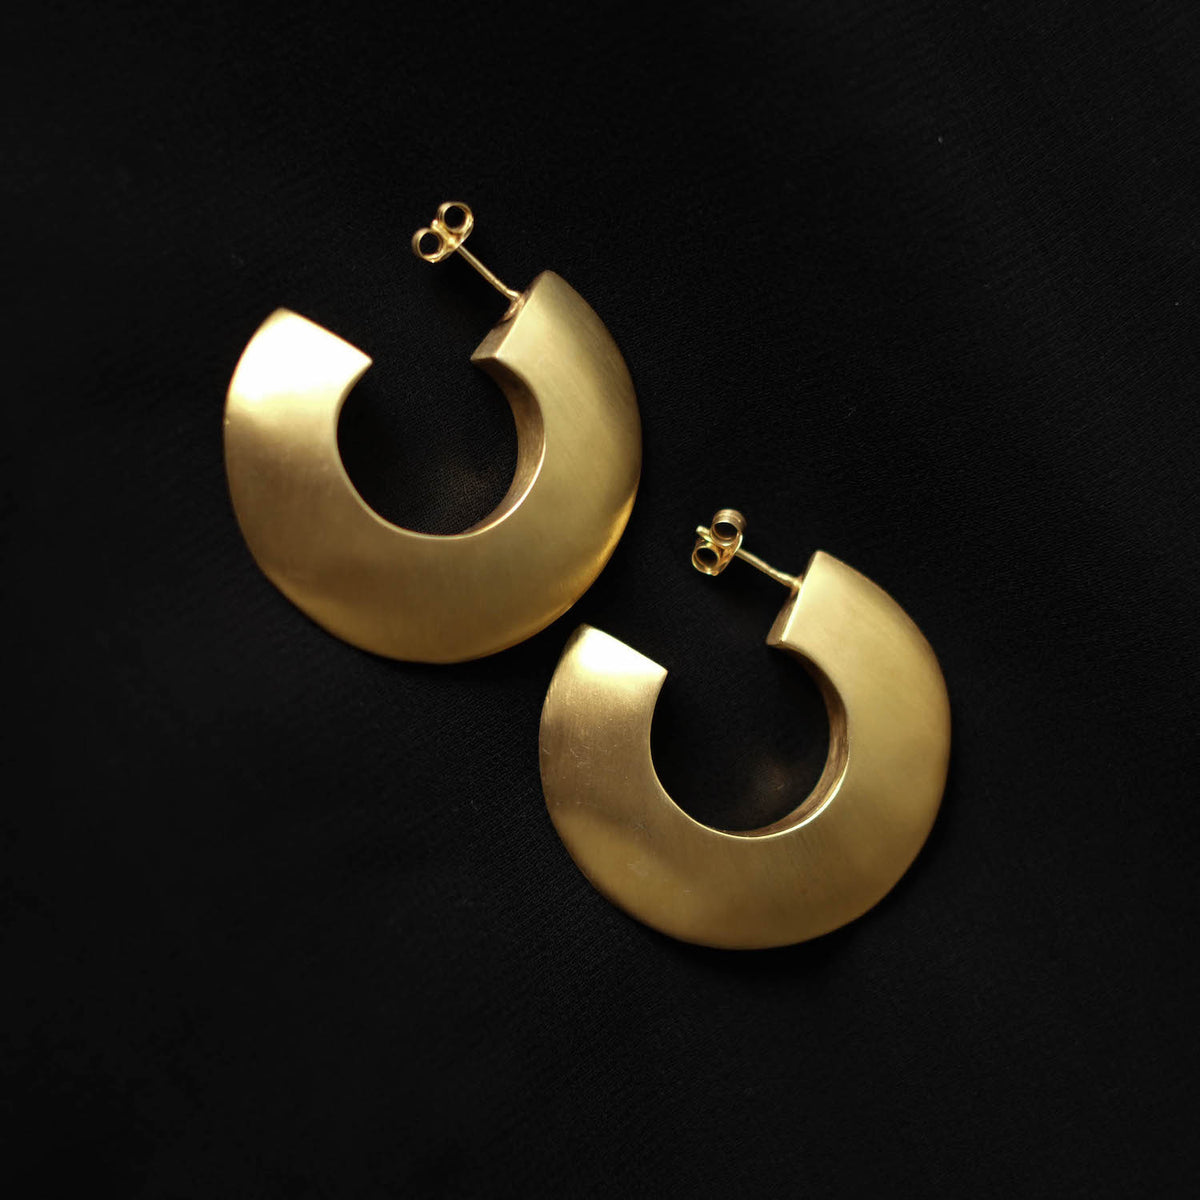 Pendientes artesanales hechos a mano en plata de le con baño de oro mateado. Diametro 4 cm Peso  18 g. Handcrafted silver earrings gold plated. Lula Máiz